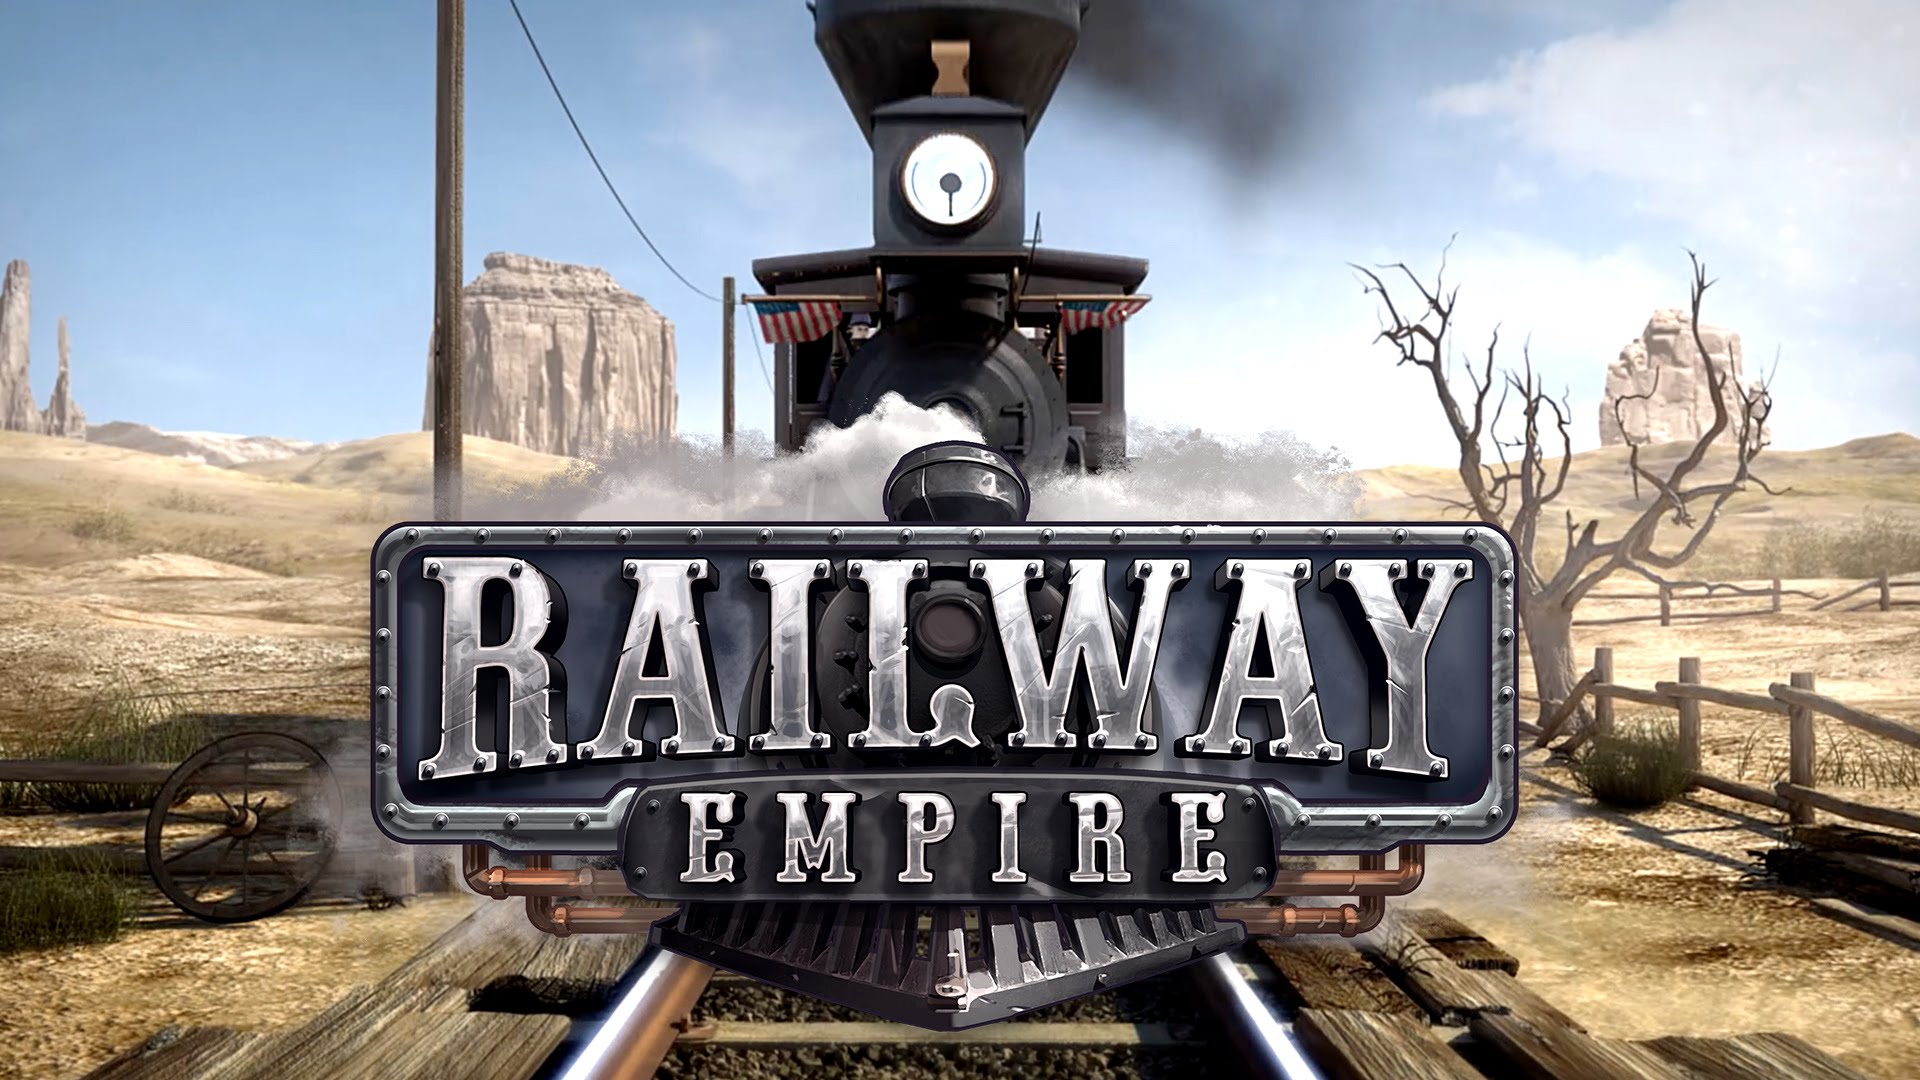 Railway Empire W2Uc